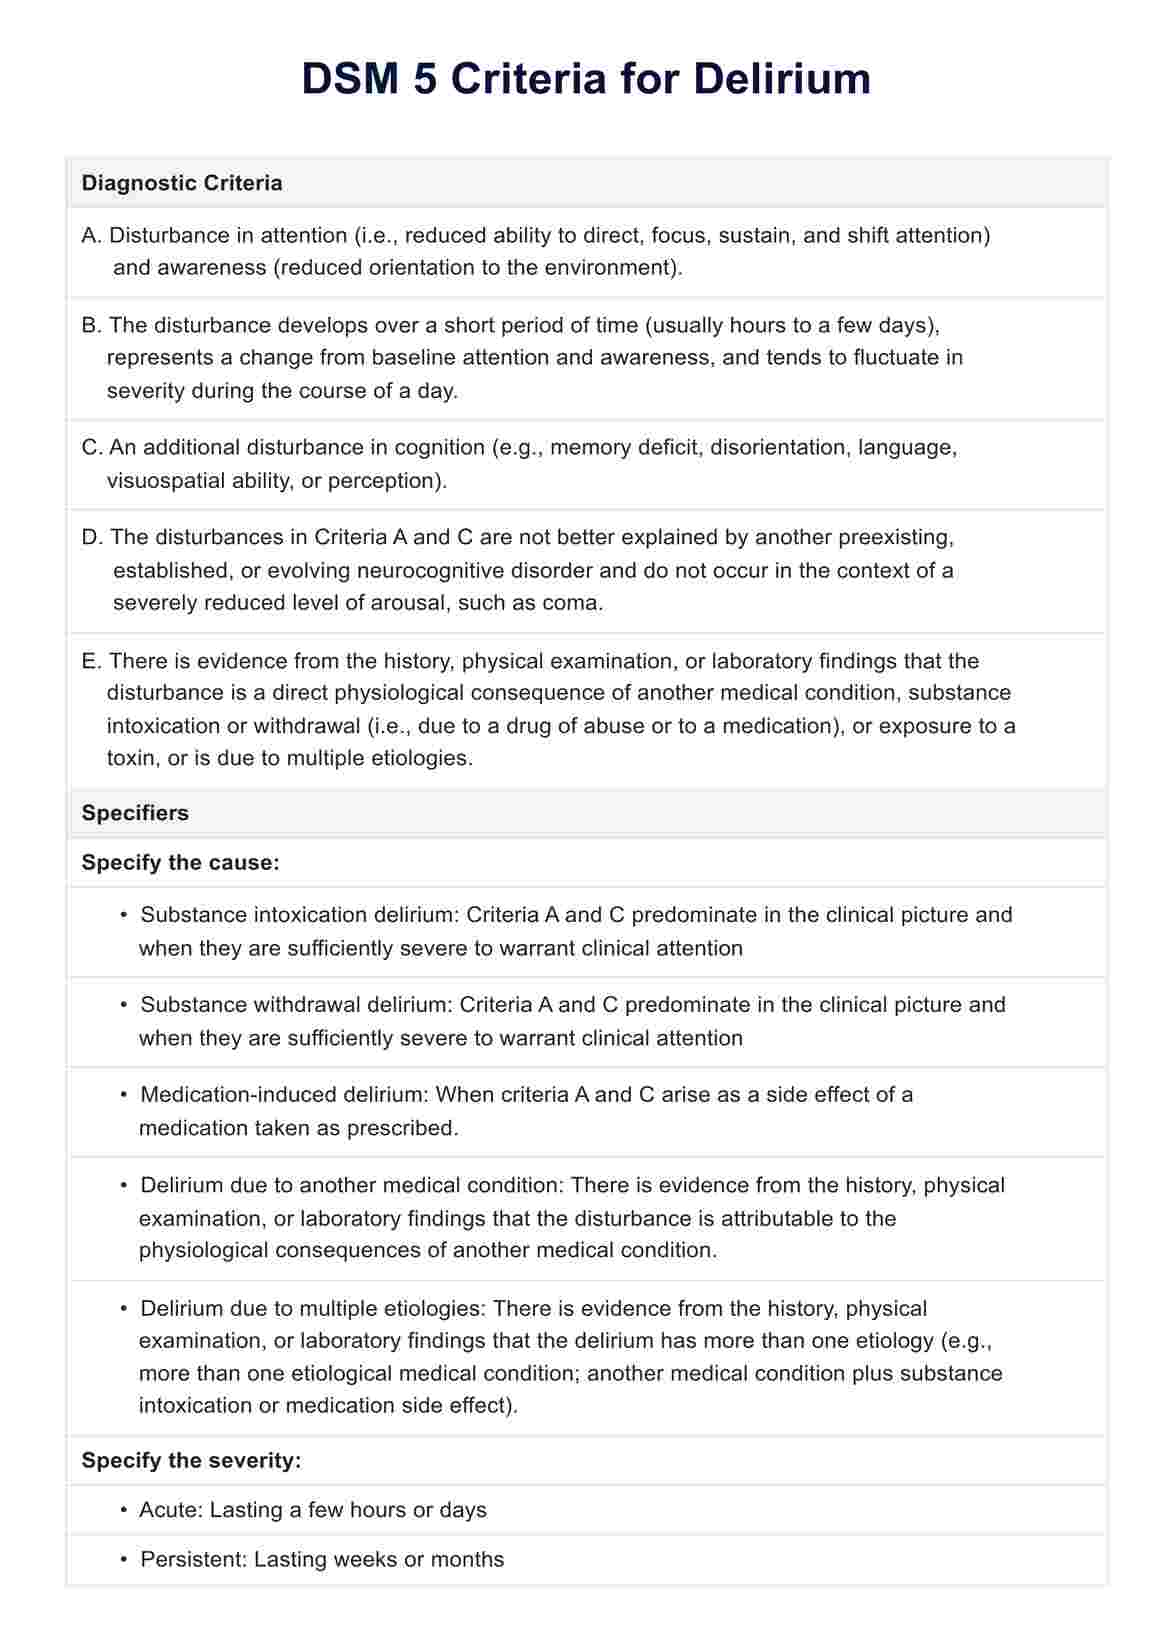 DSM 5 Criteria for Delirium PDF Example